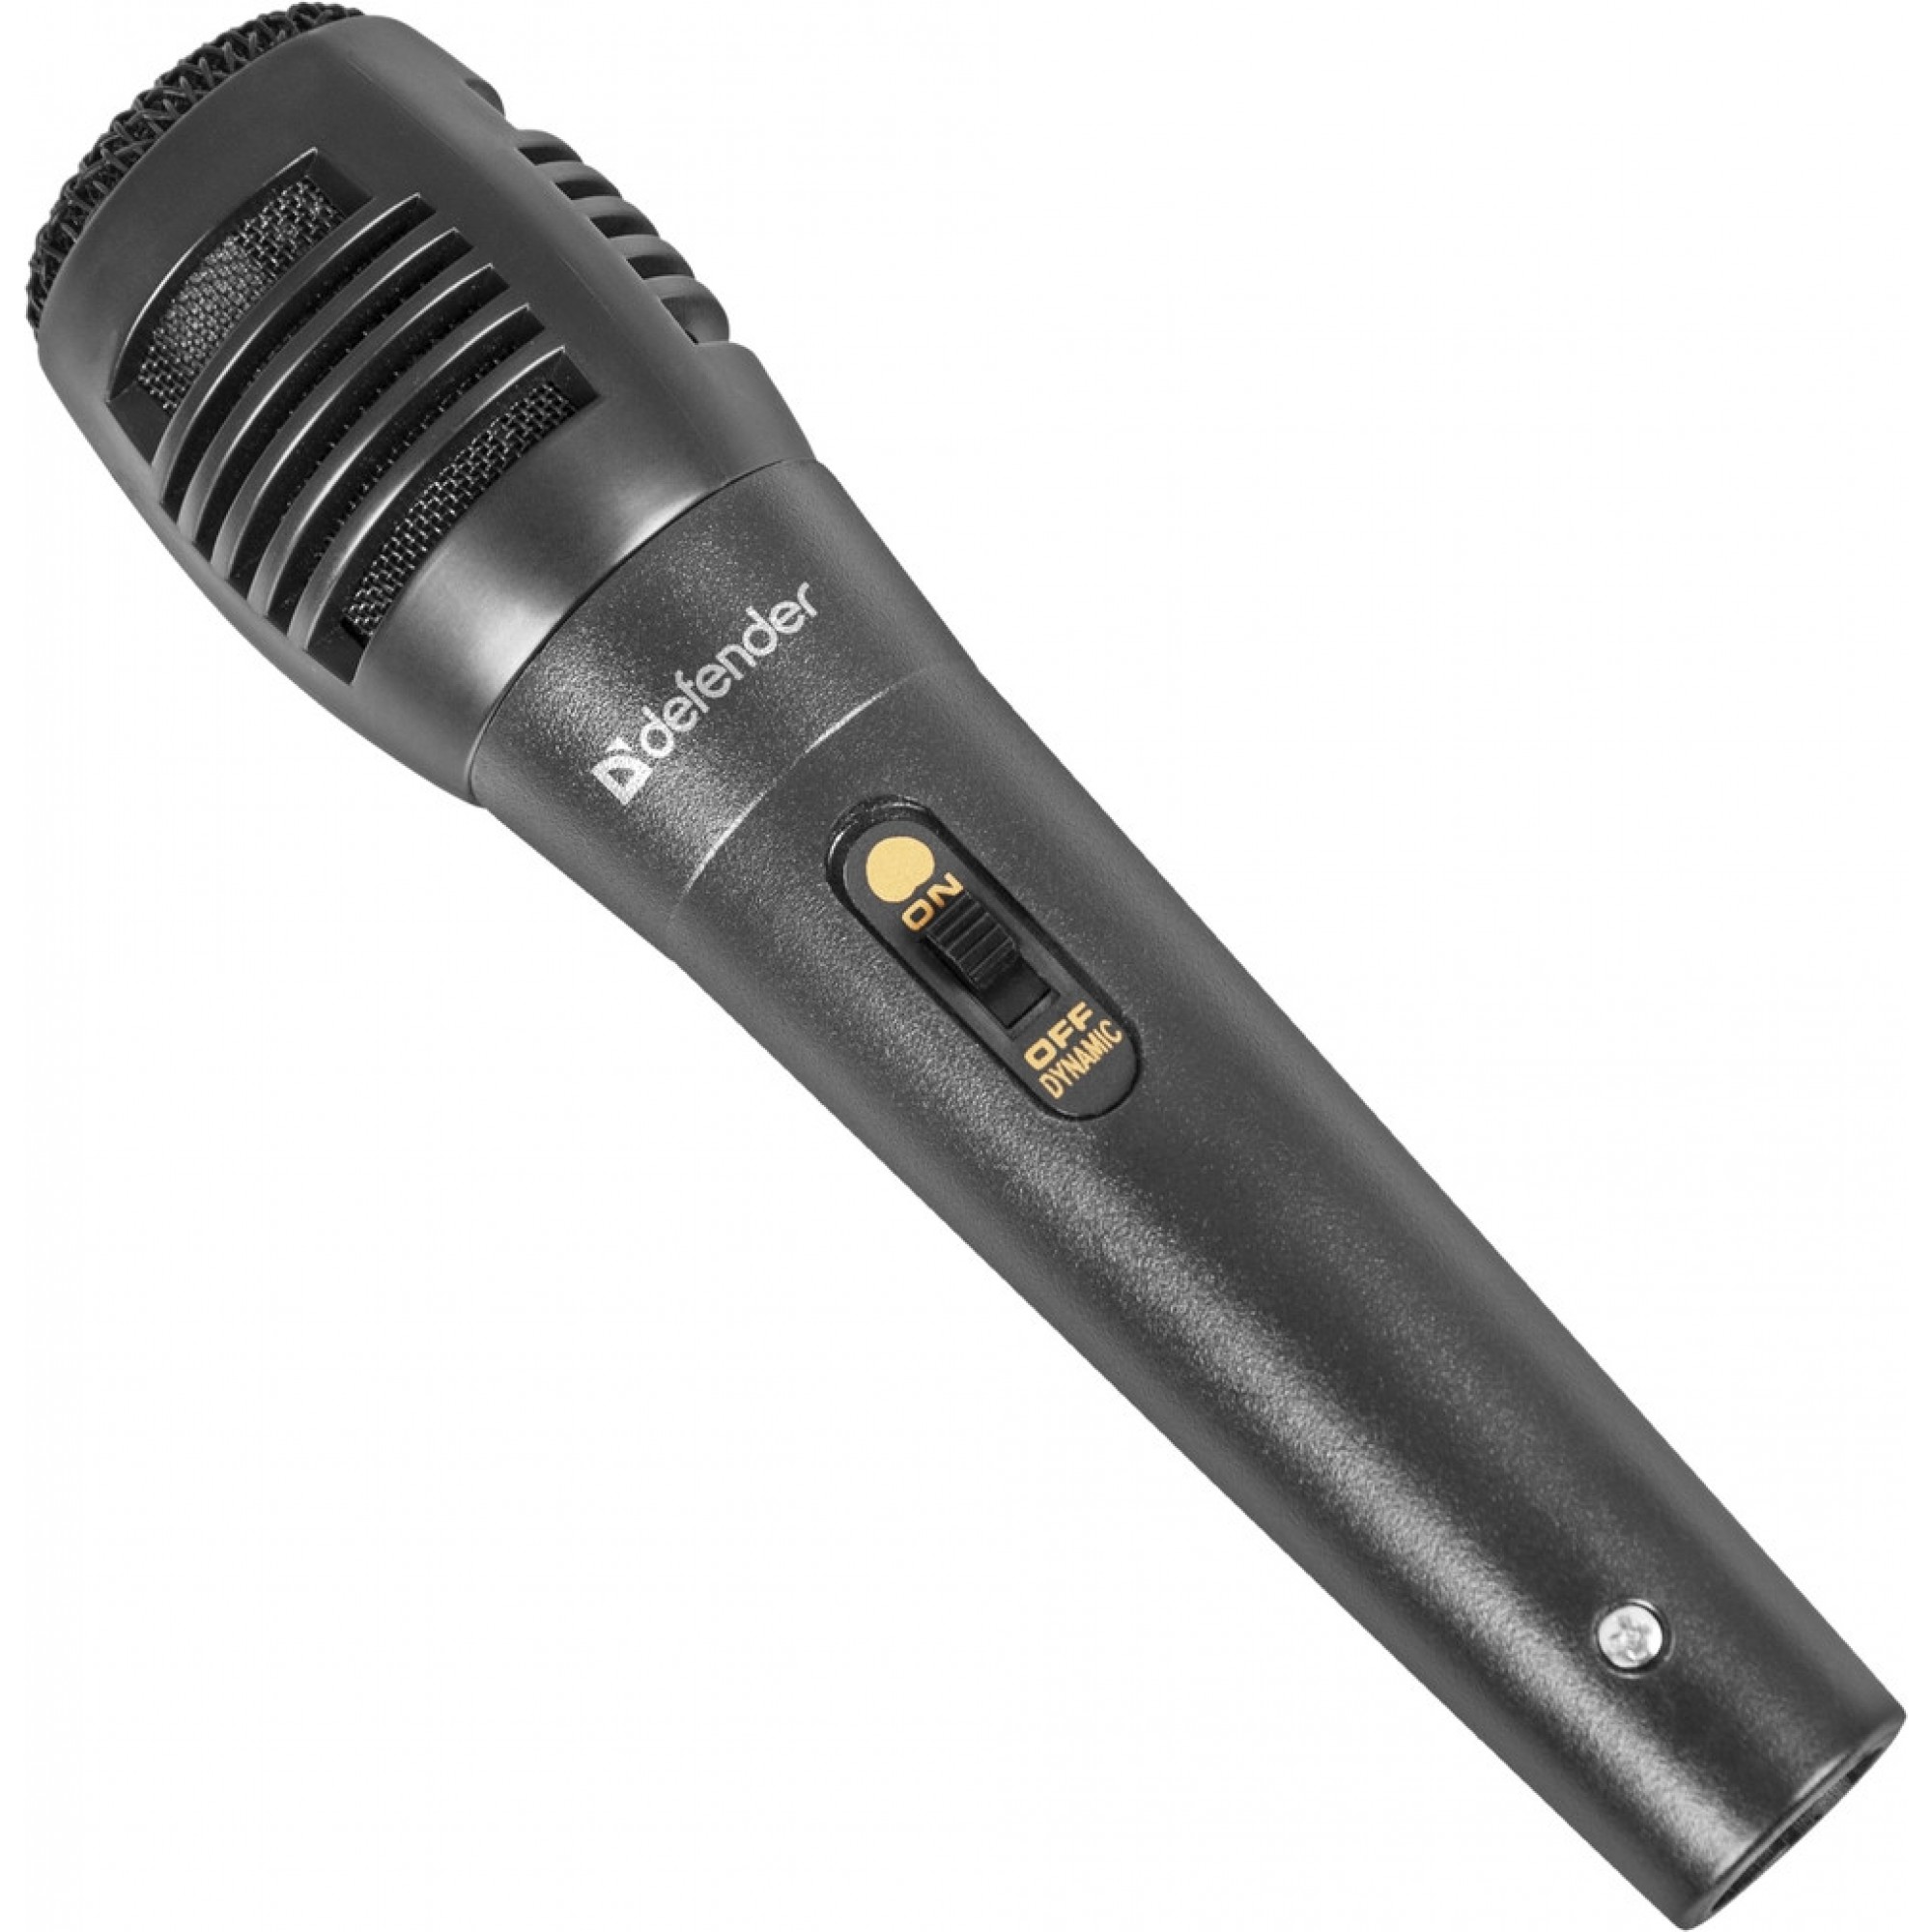 Мікрофон Defender MIC-129 для караоке